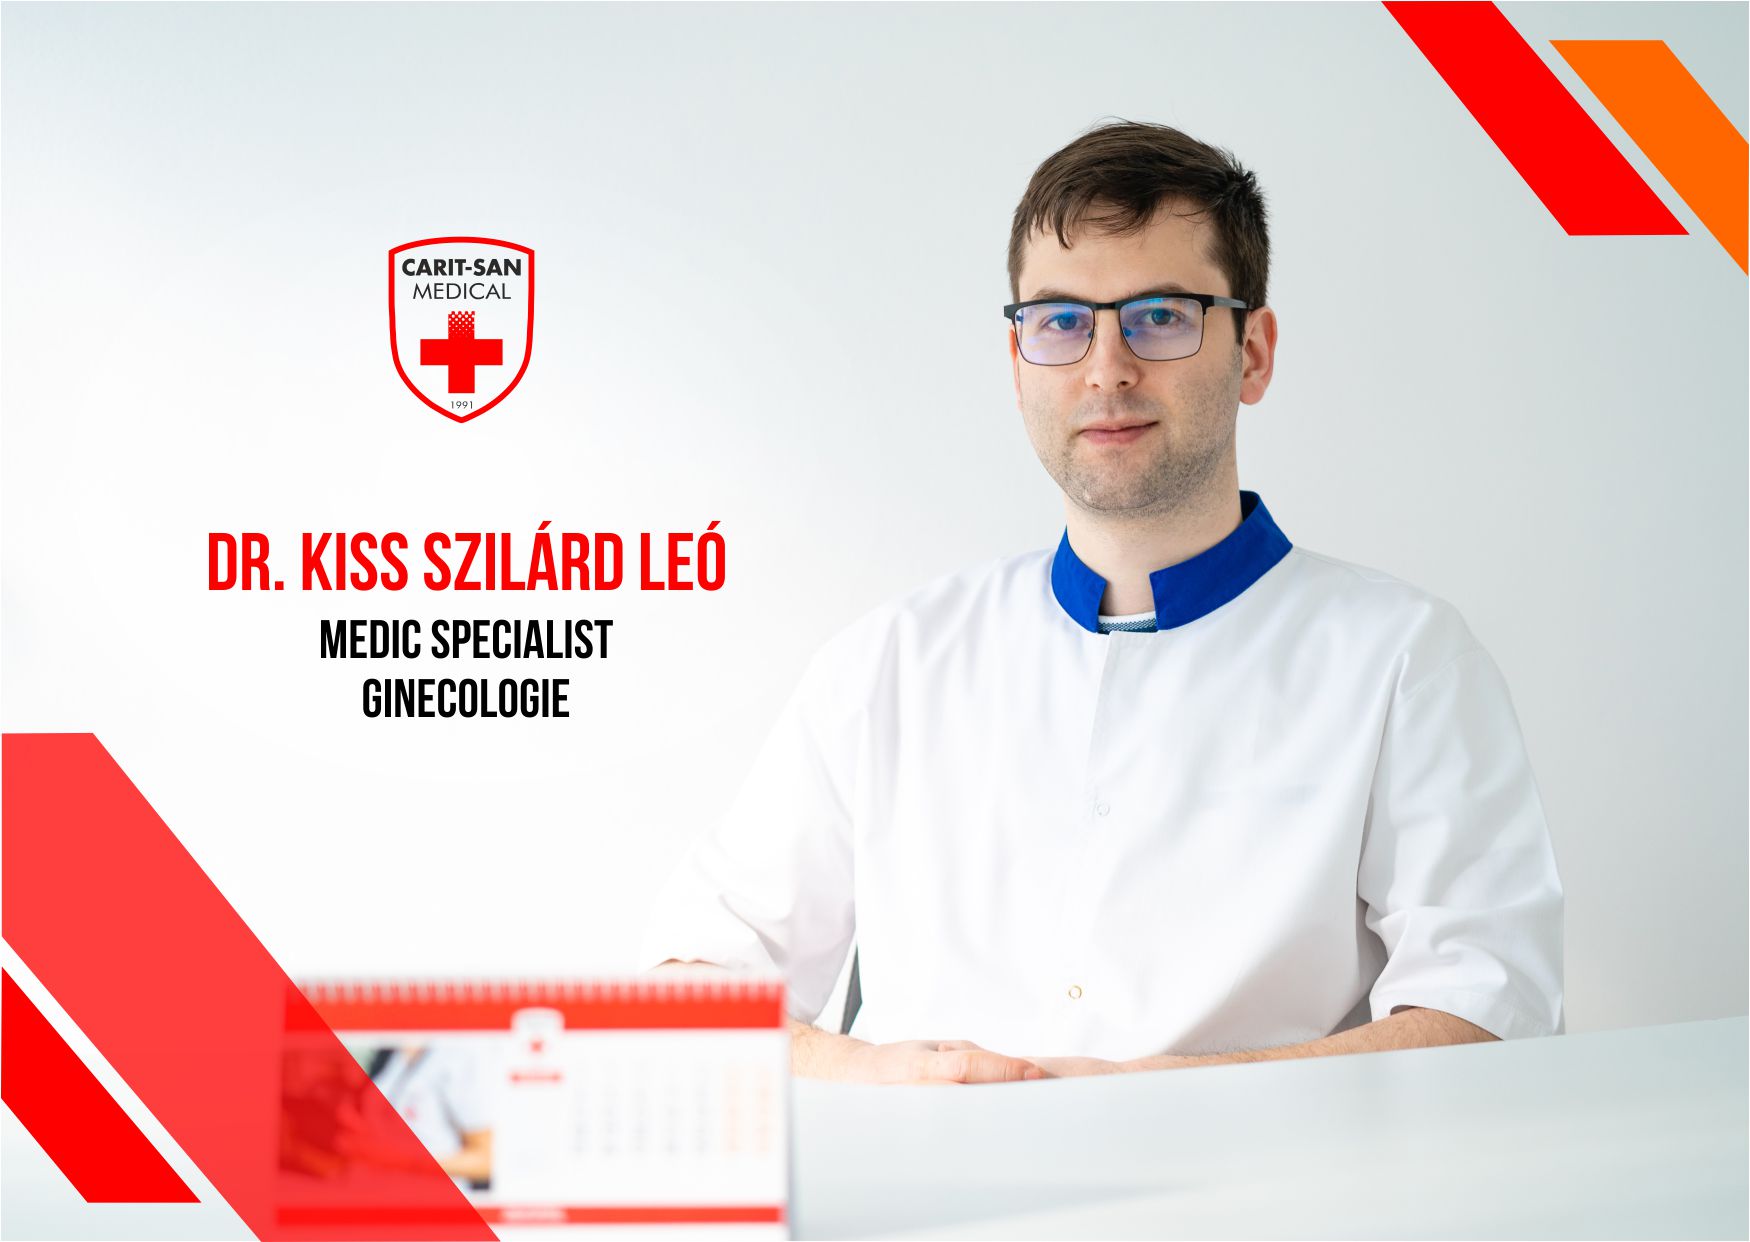 Dr. Kiss Szilard Leo